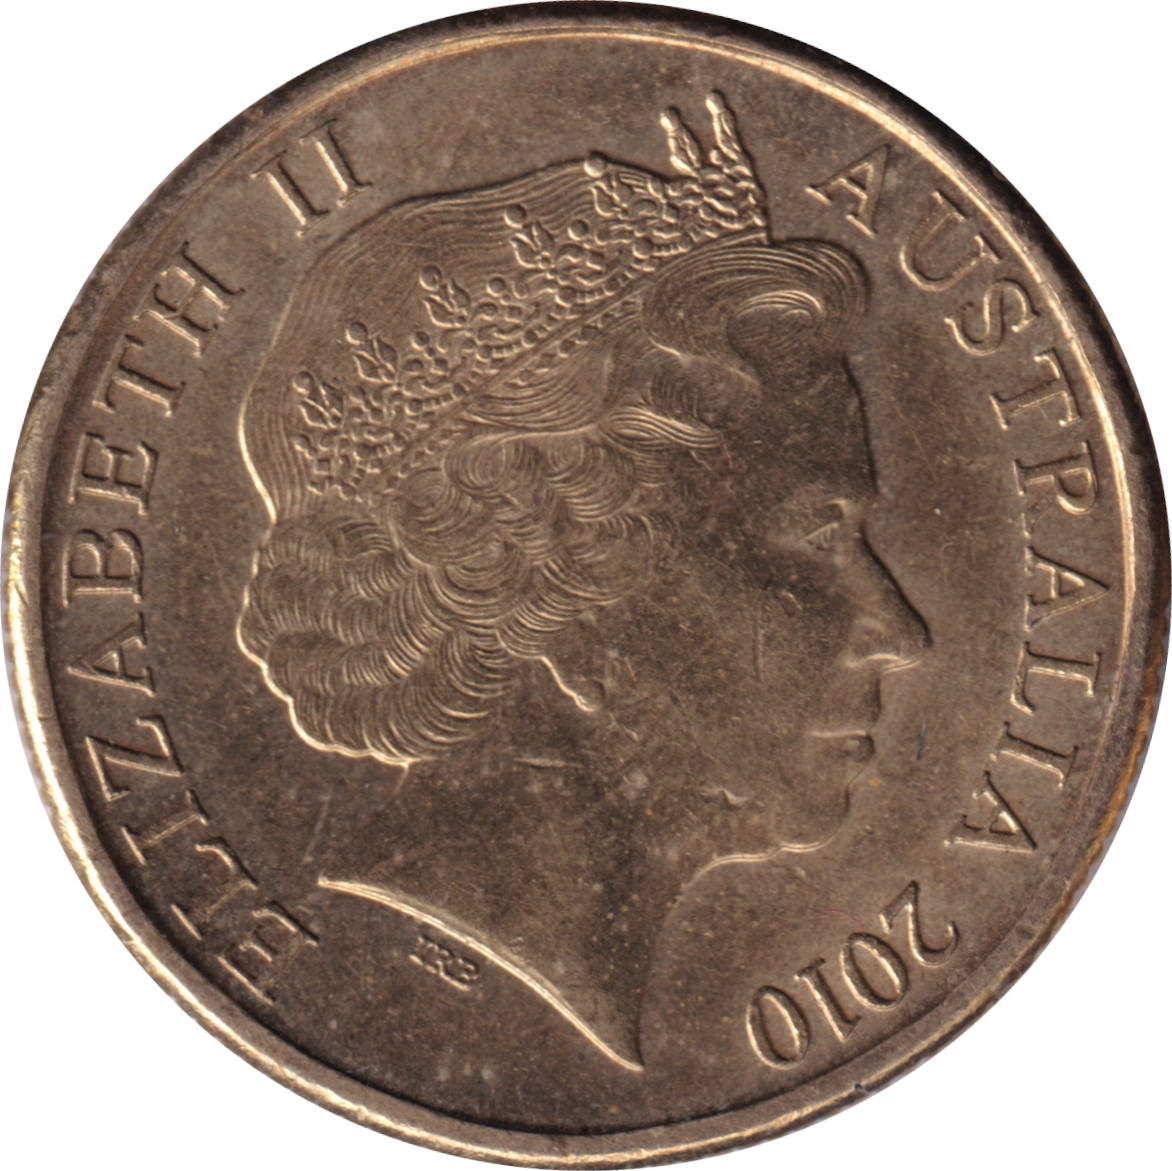 1 dollar - Elizabeth II - Tête agée